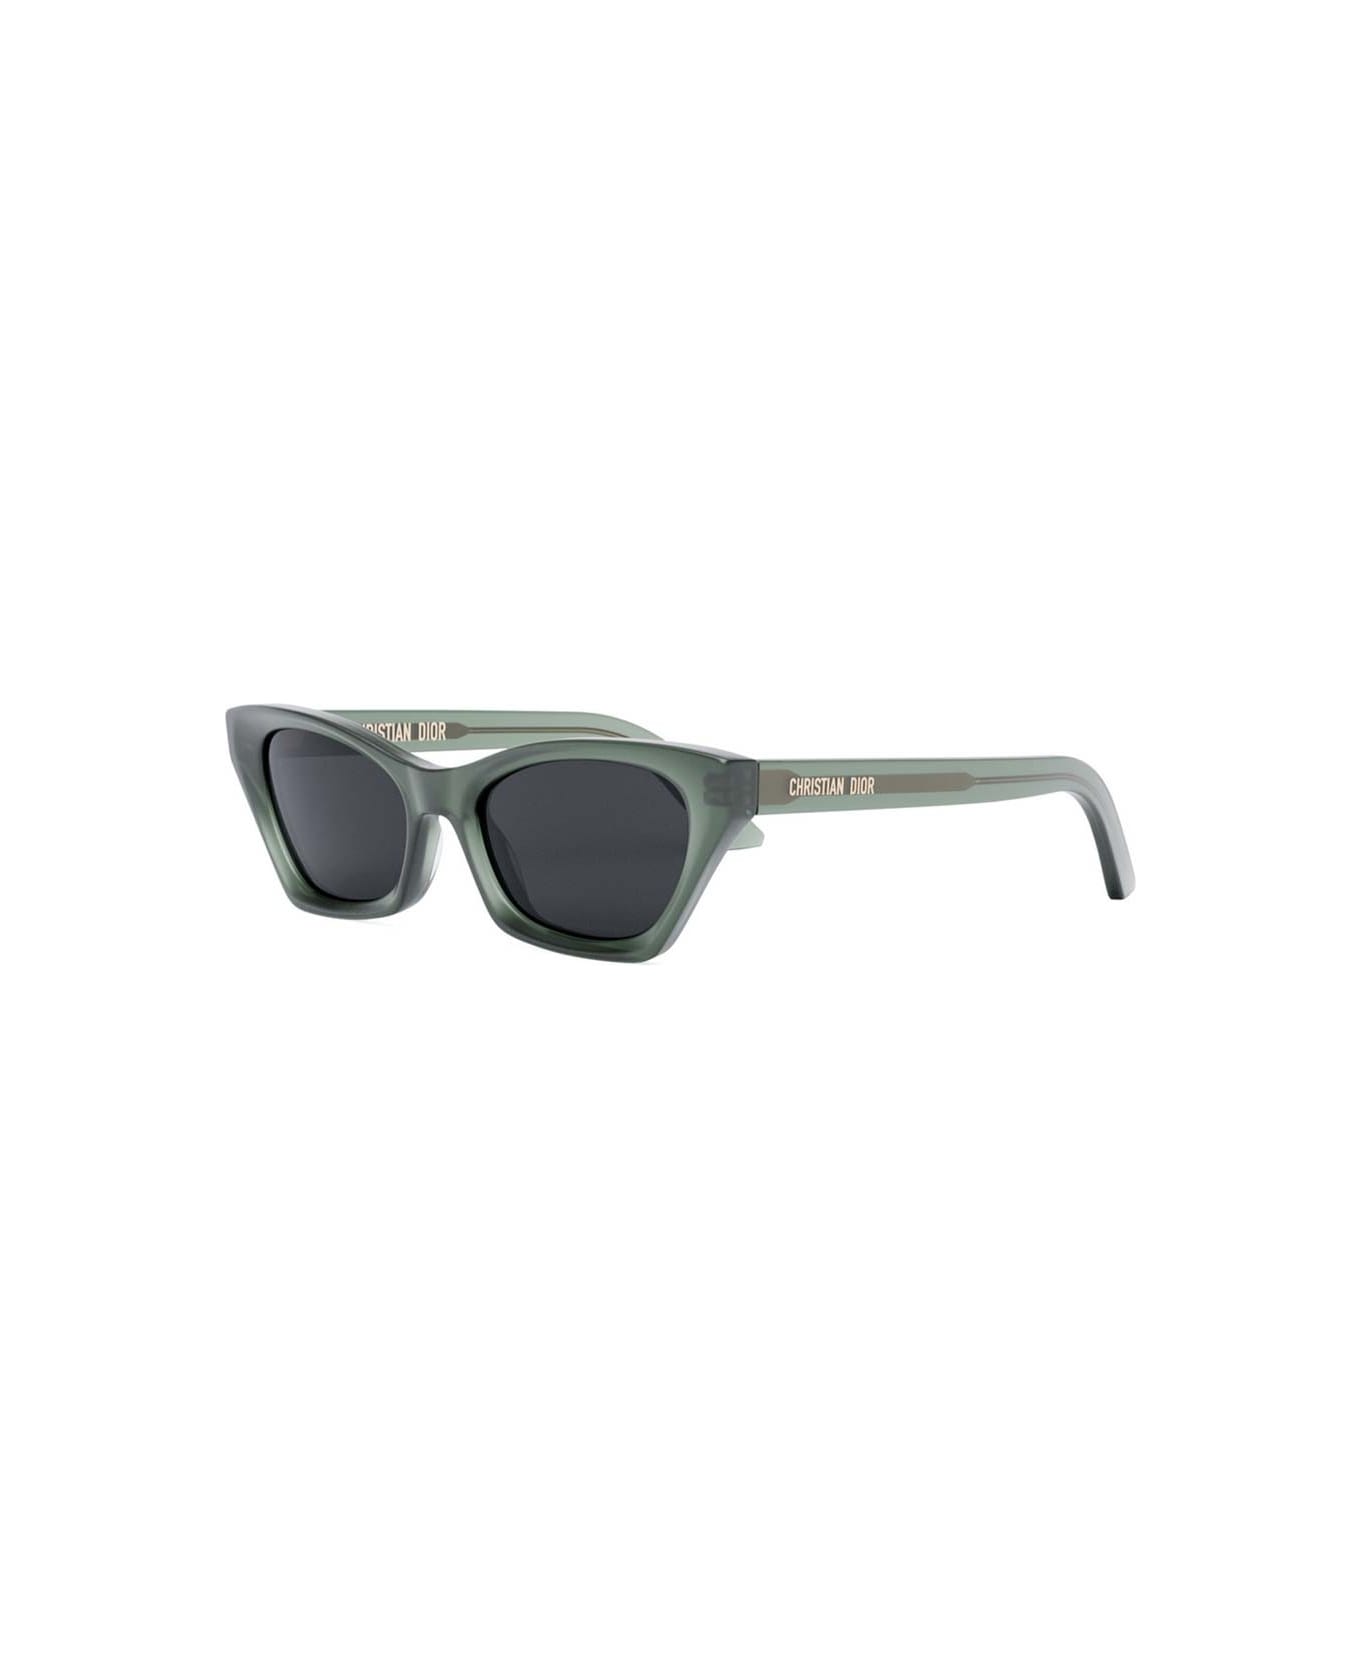 Dior Eyewear Sunglasses - Verde/Grigio サングラス